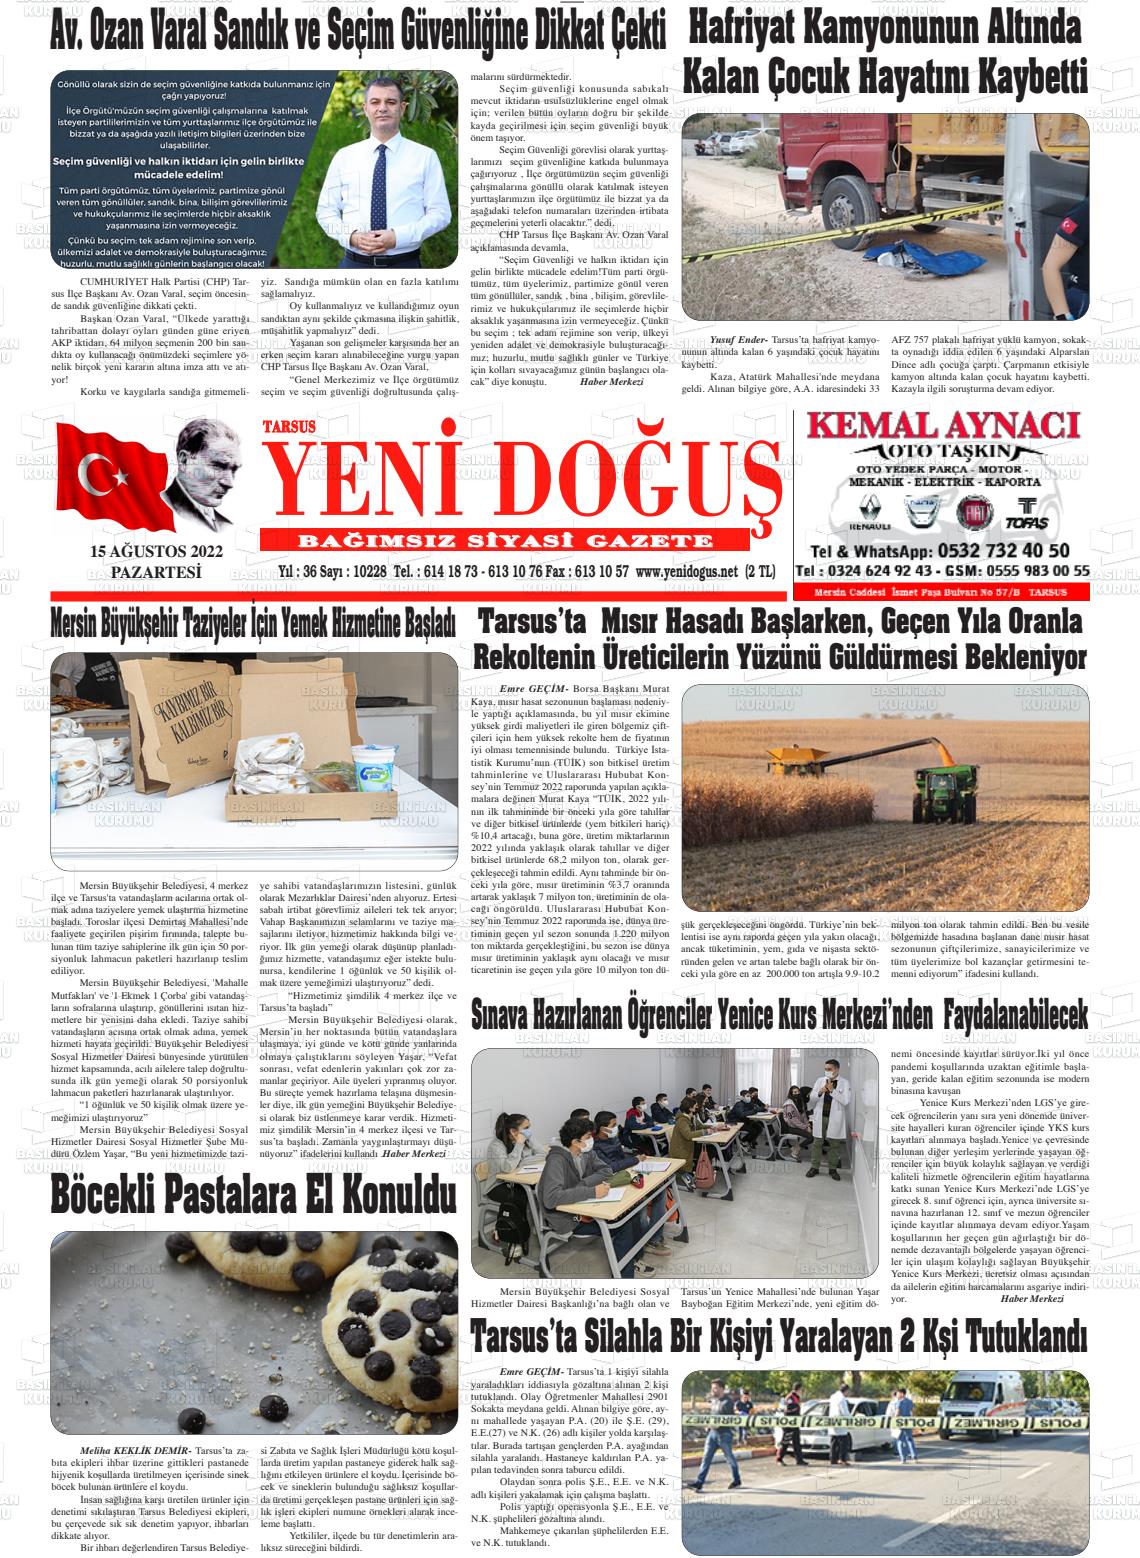 15 Ağustos 2022 Tarsus Yeni Doğuş Gazete Manşeti